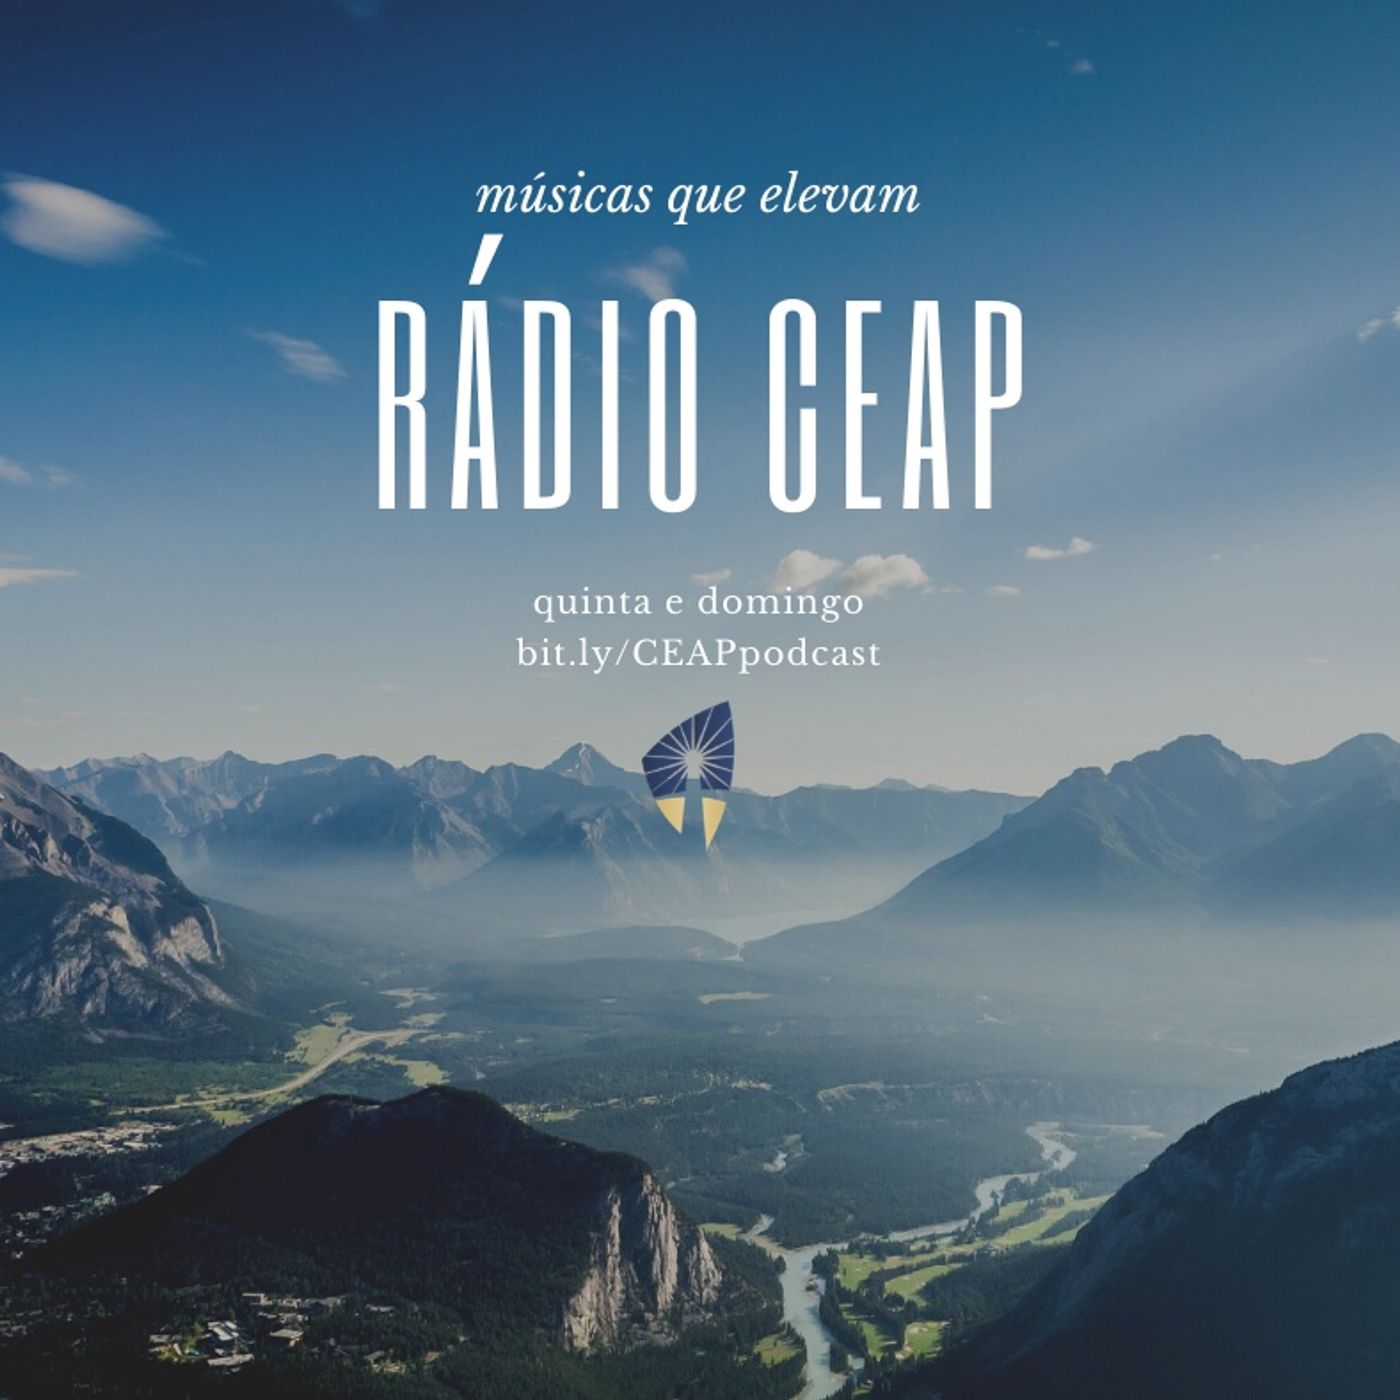 Rádio CEAP's podcast